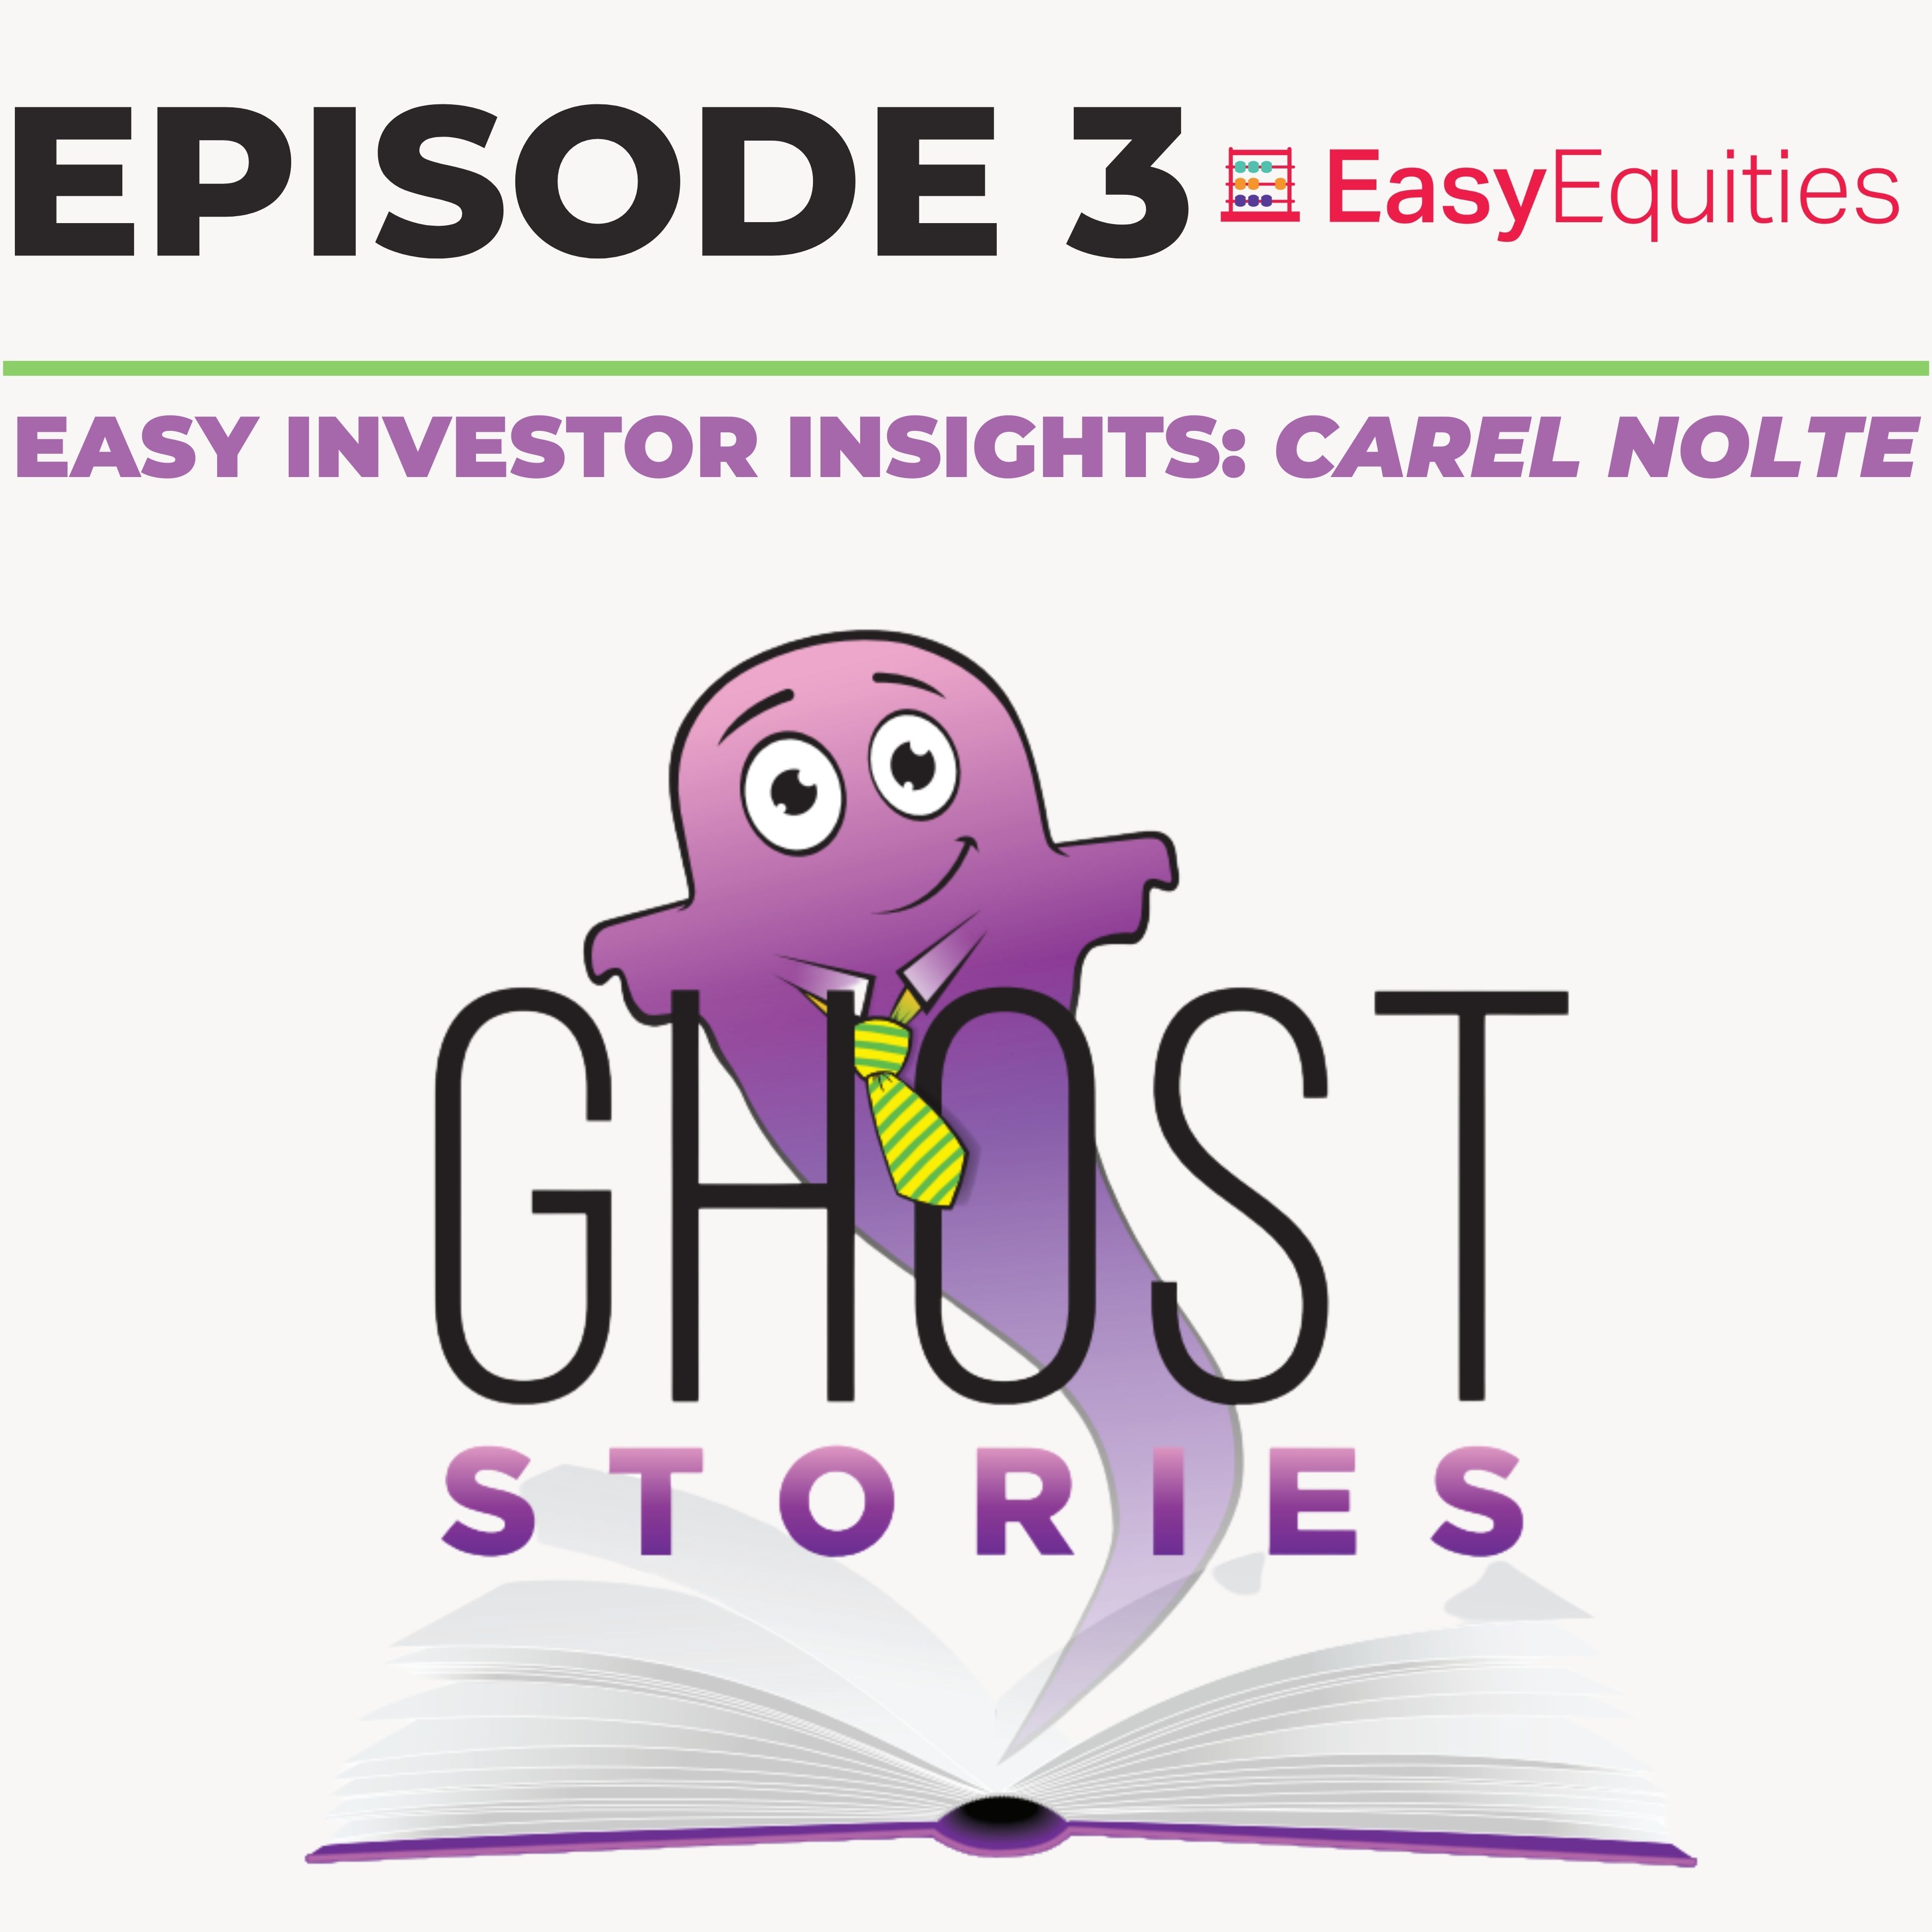 Ghost Stories Ep3: Carel Nolte (EasyEquities)